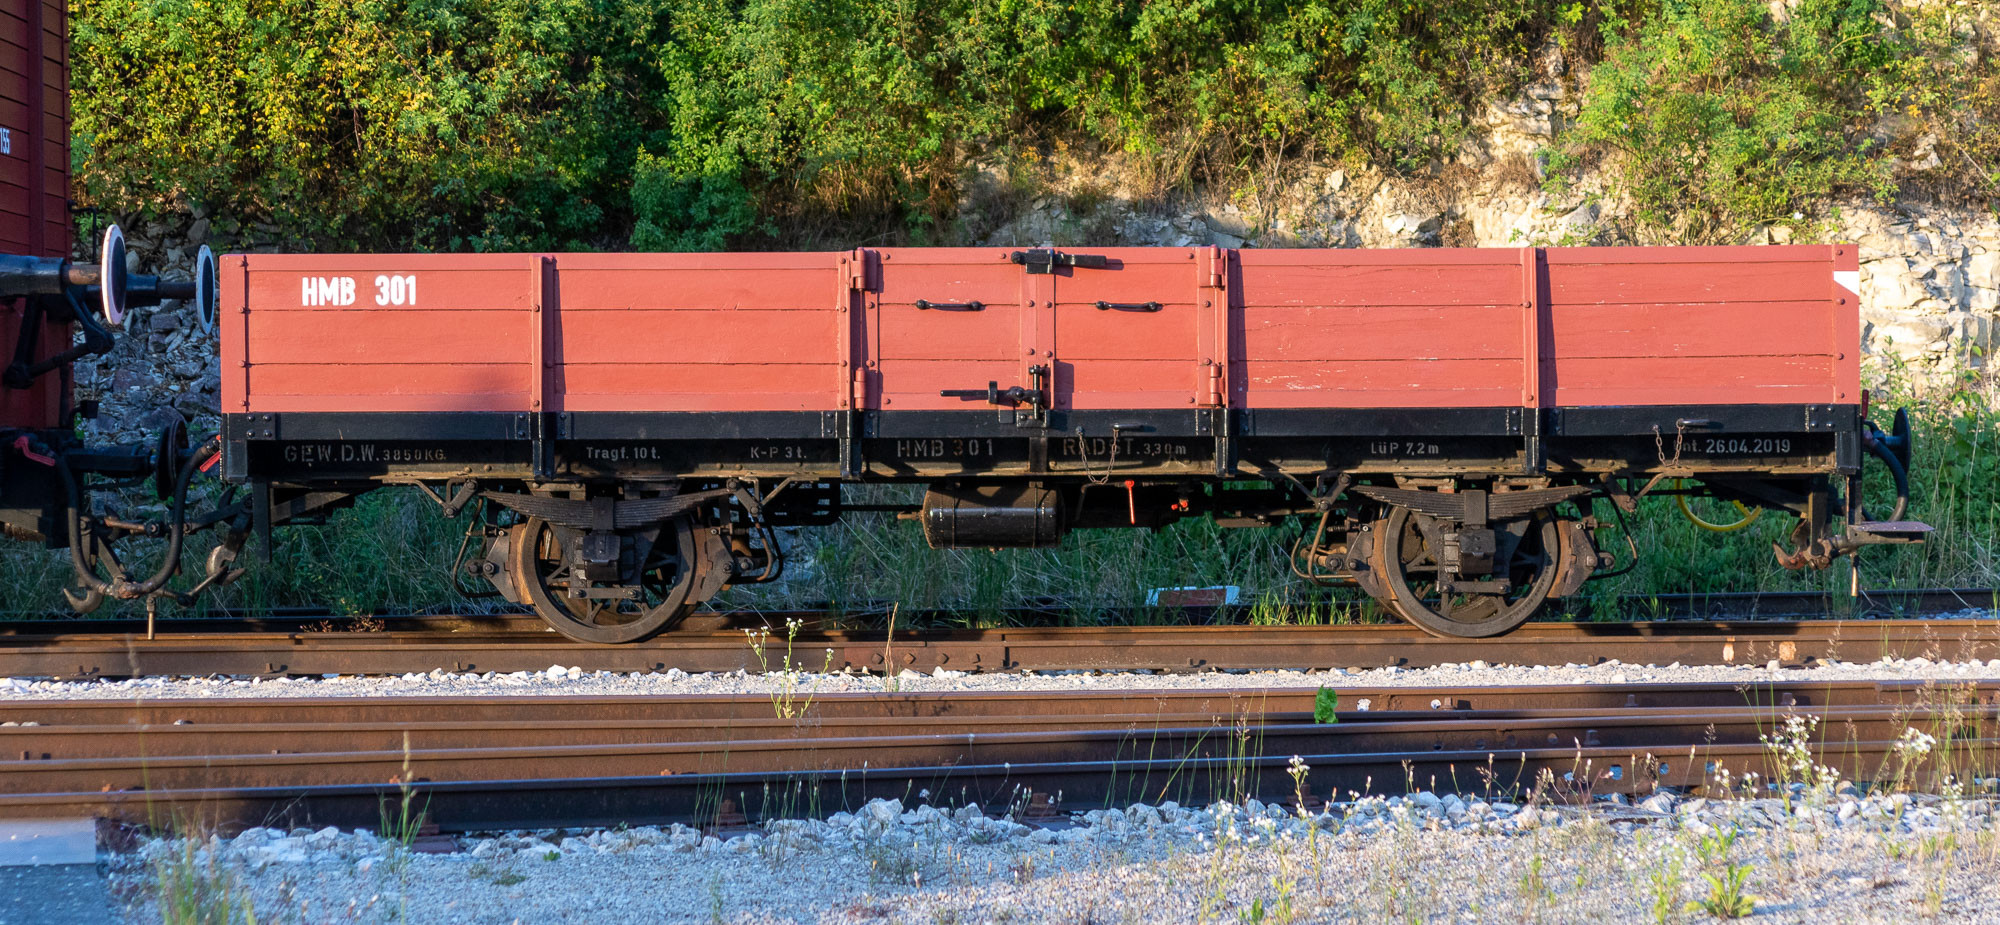 Offener Güterwagen Ow 301